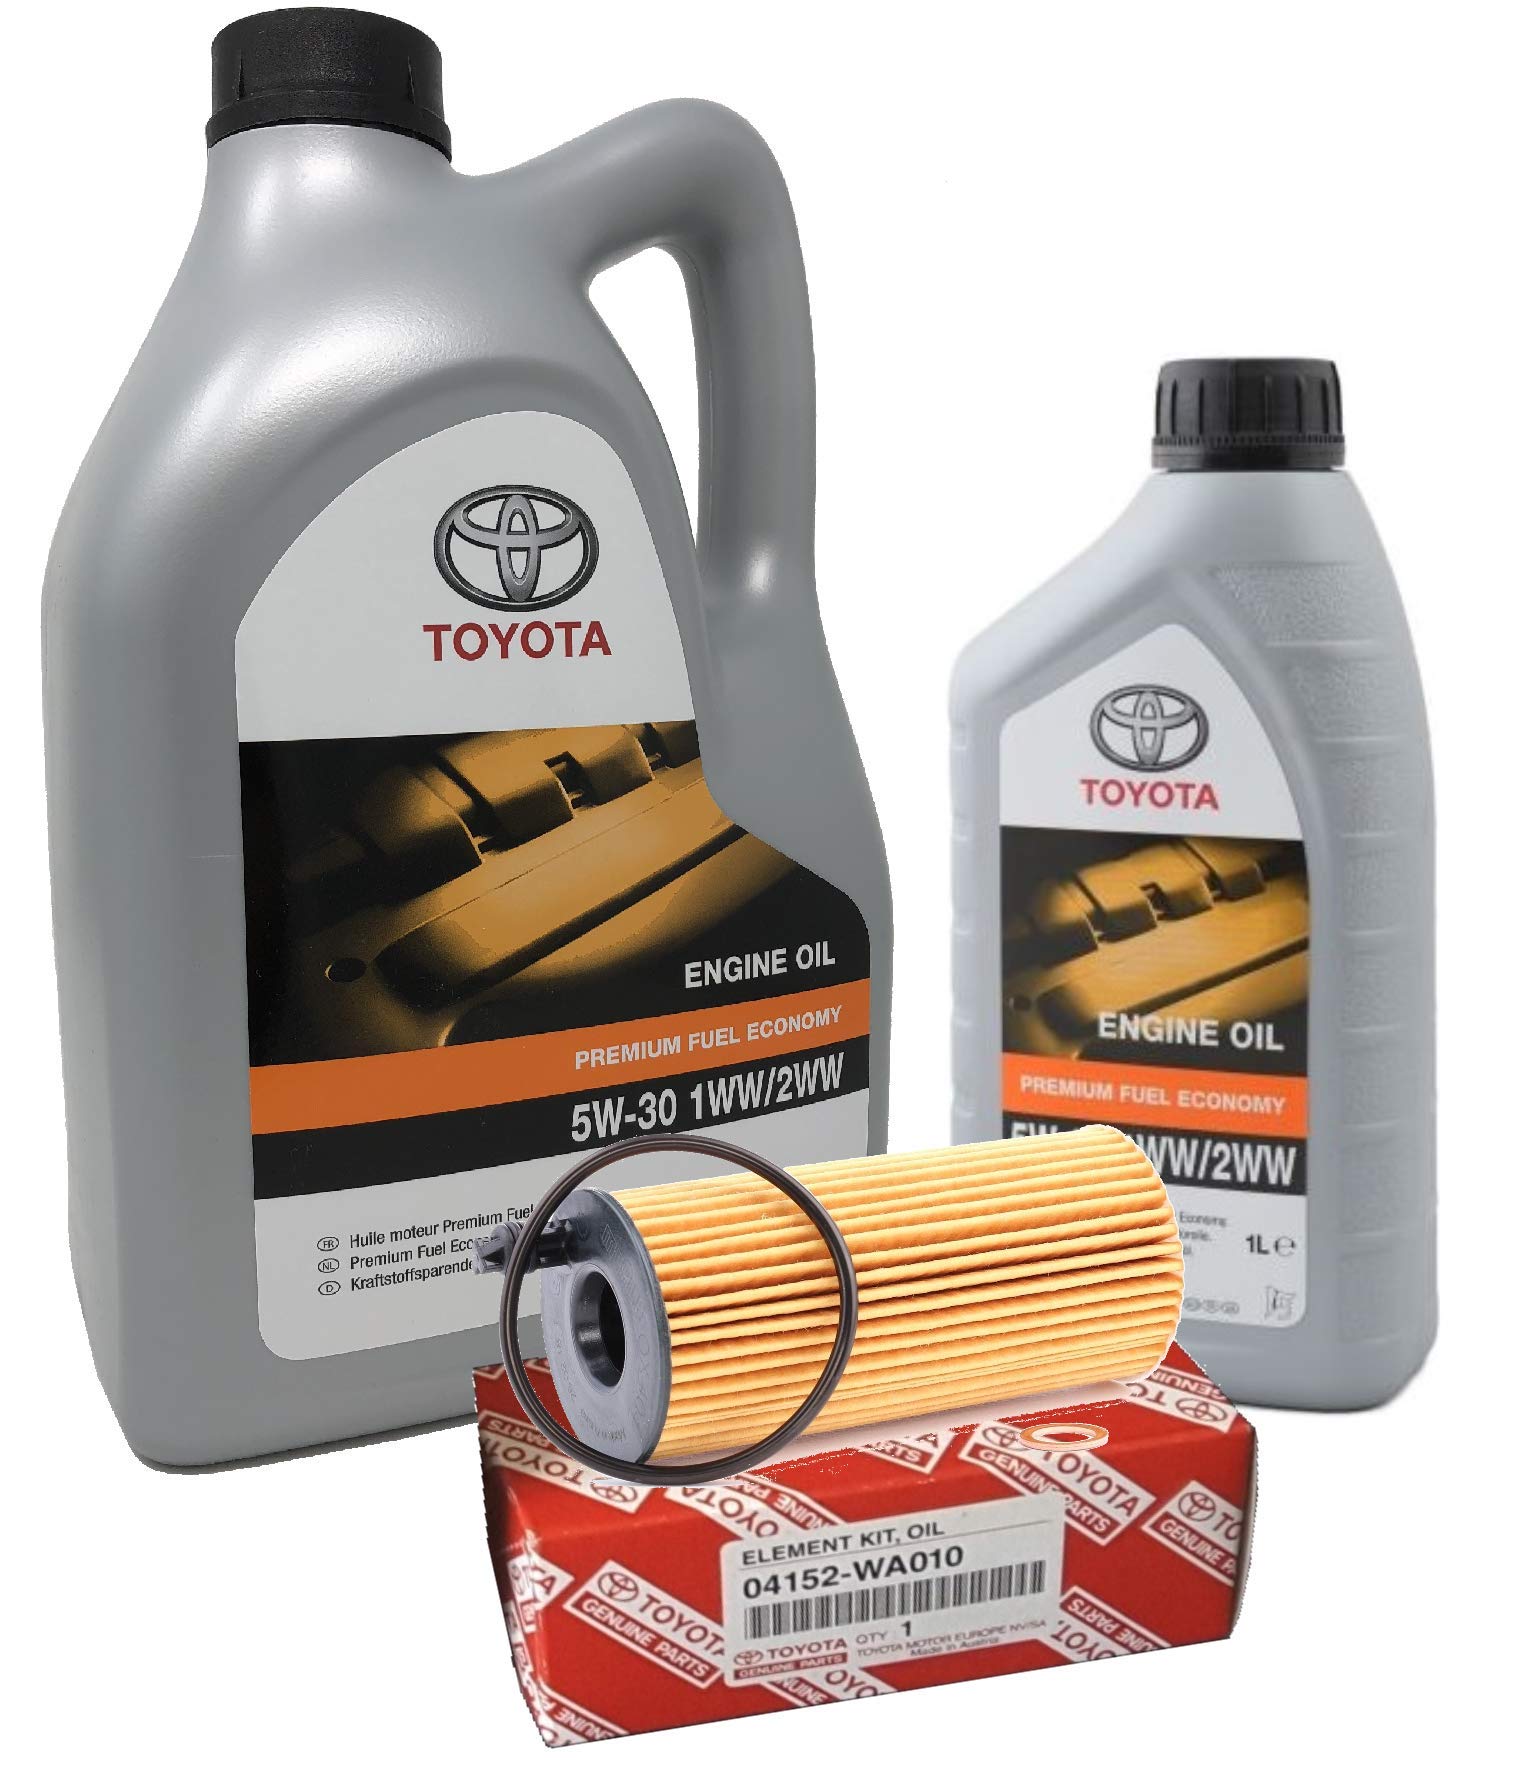 Original Motoröl - Toyota PFE 5W-30 1WW 2WW, Packung 6 Liter (Dieselmotoren) + Original Ölfilter von Toyota